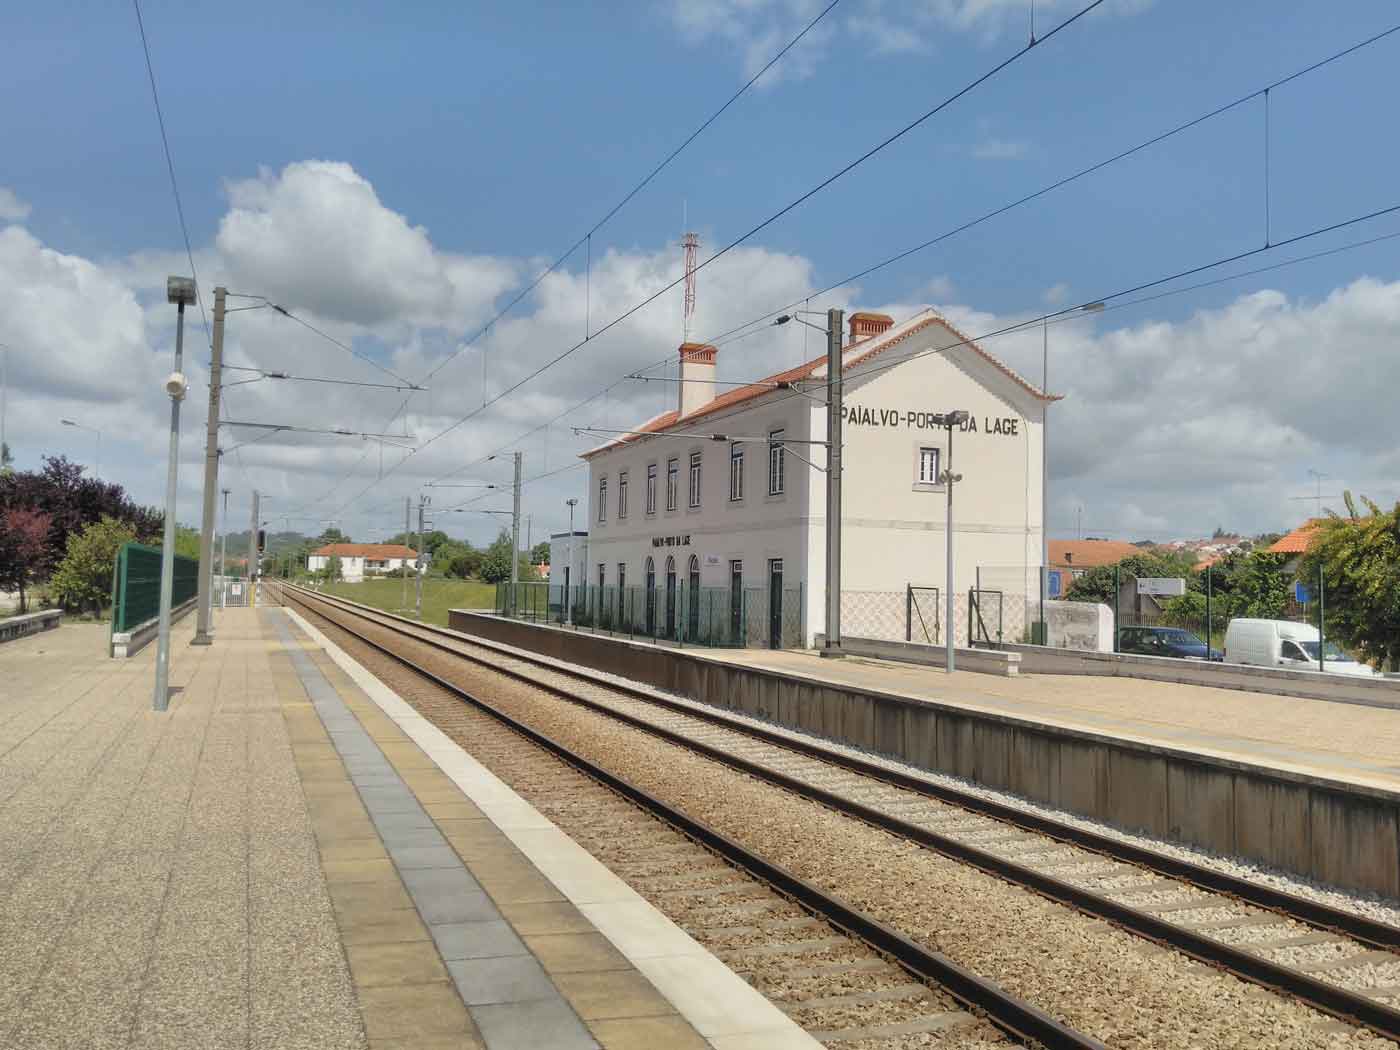 The building of Paialvo Porto da Lage train station